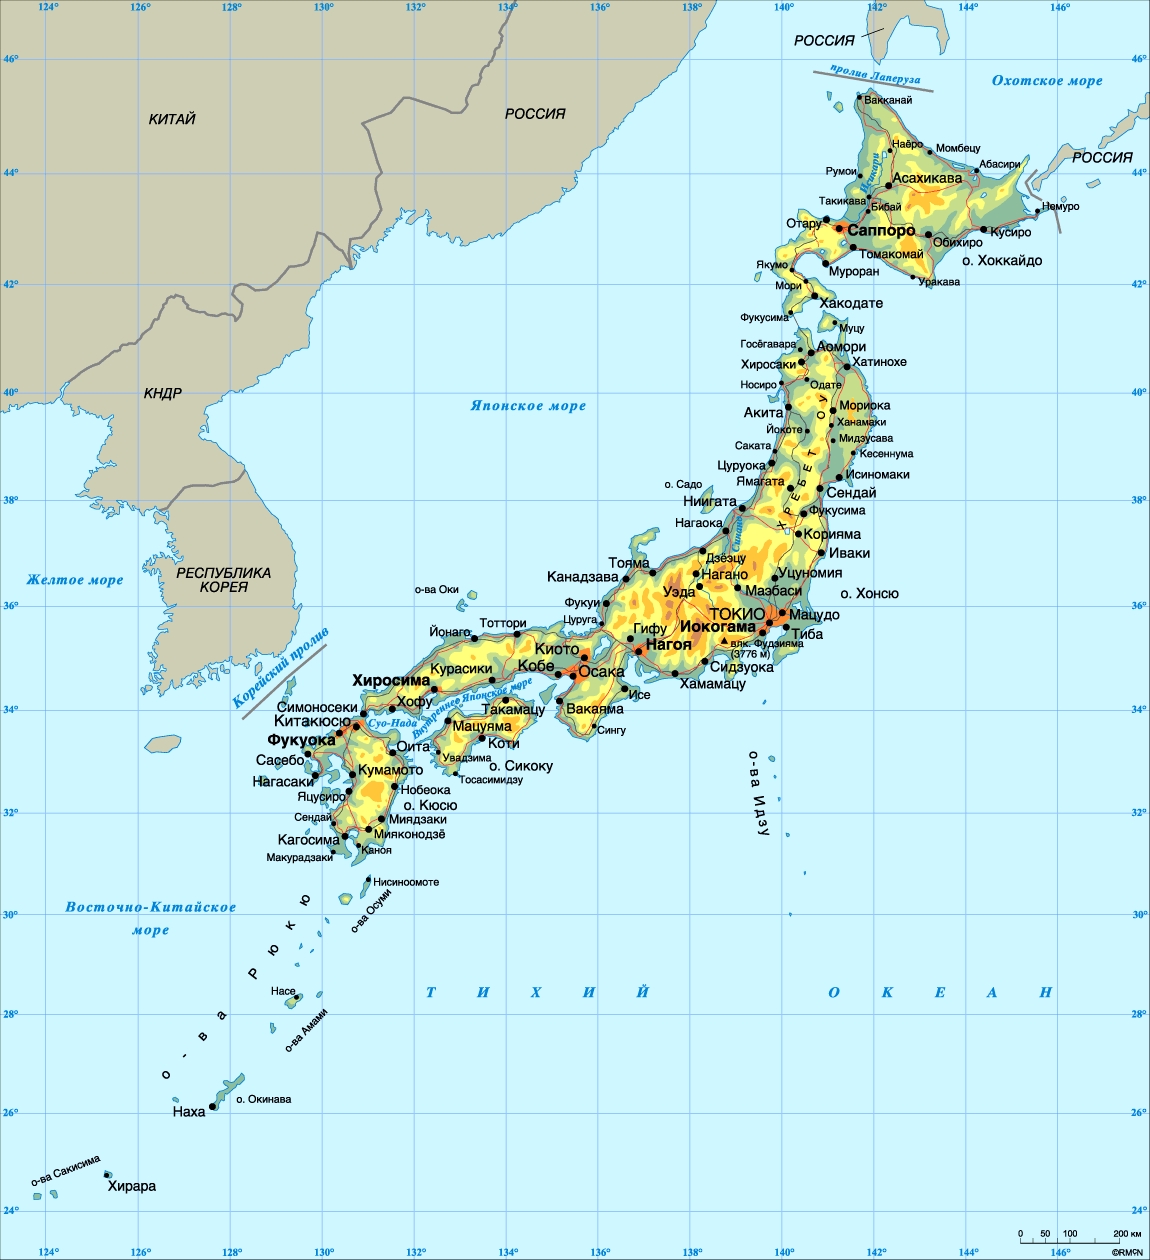 Реферат: Япония: доисторический период и палеолит